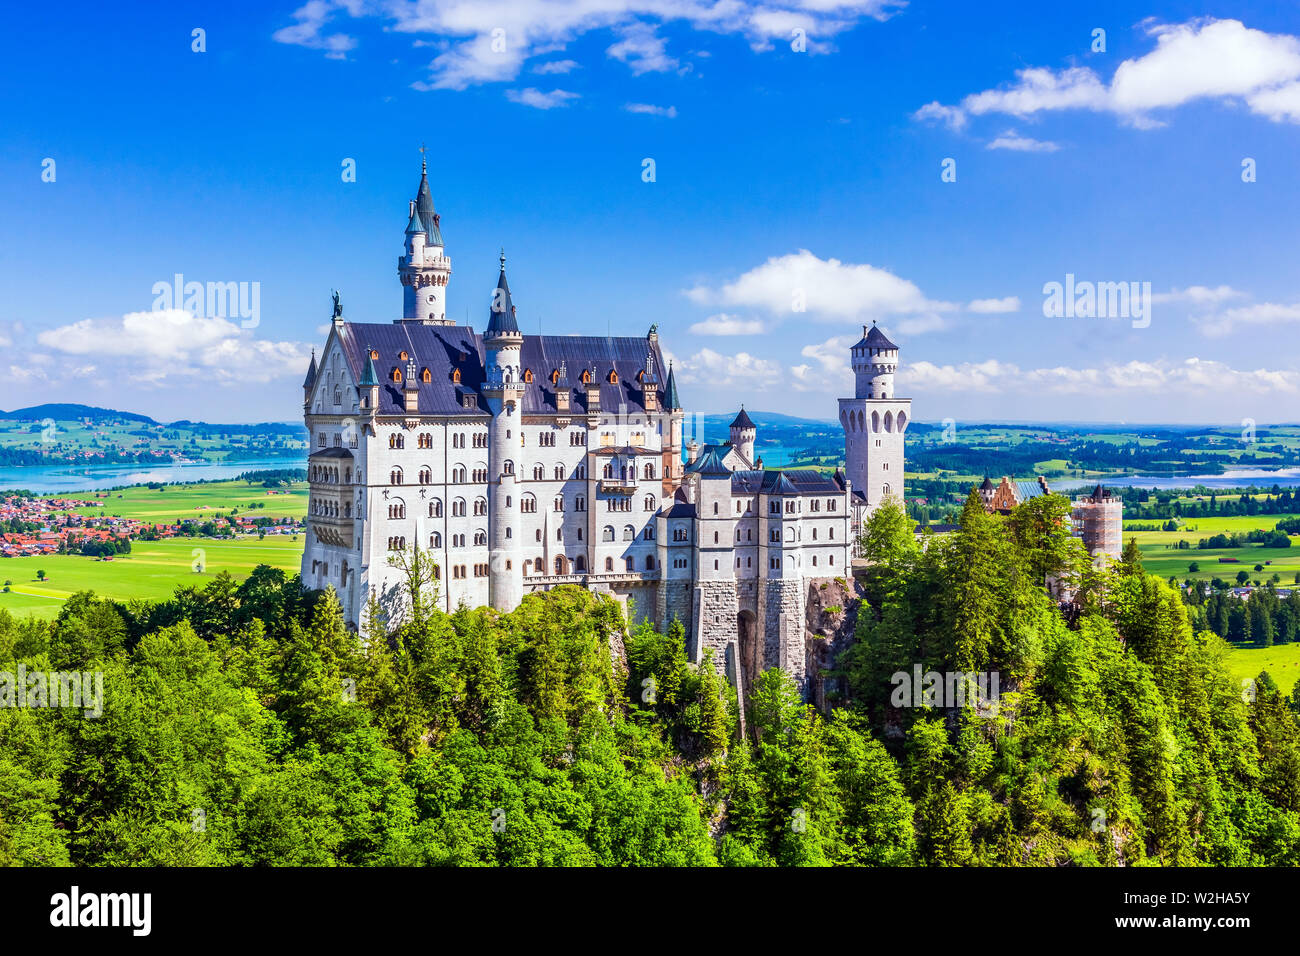 Le château de Neuschwanstein (Schloss Neuschwanstein) à Fussen, Allemagne. Banque D'Images